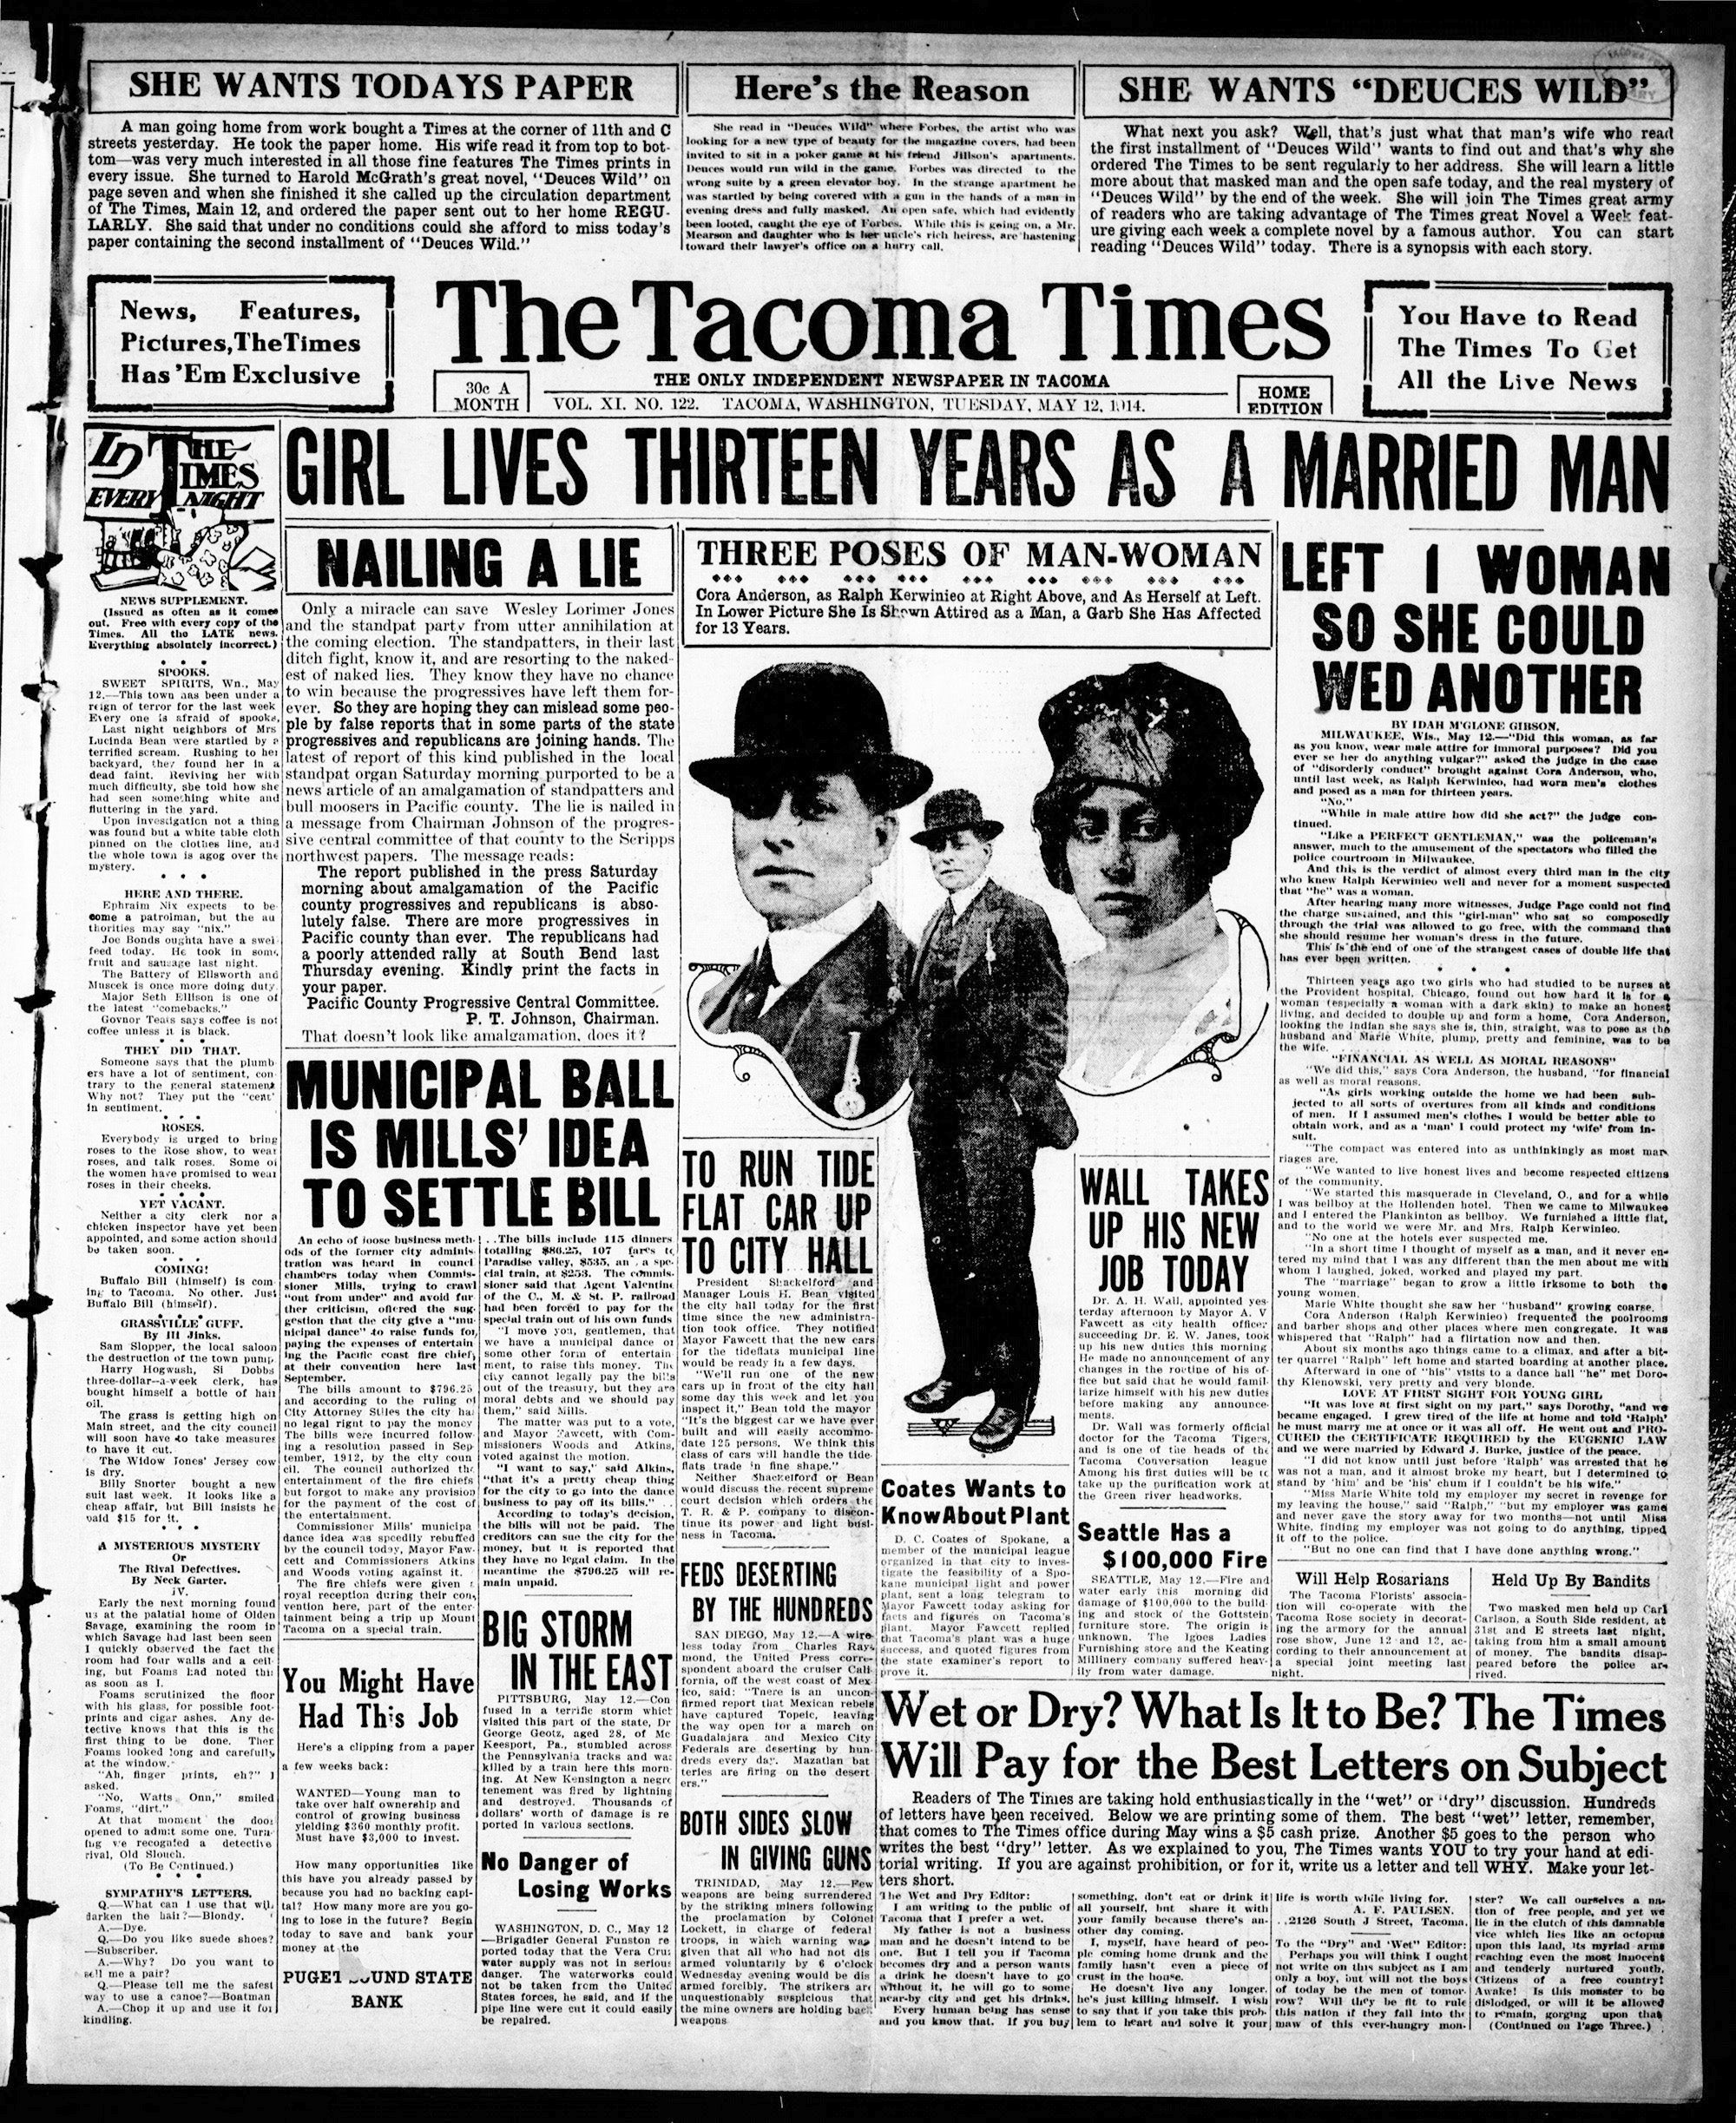 The Tacoma Times, May 12, 1914